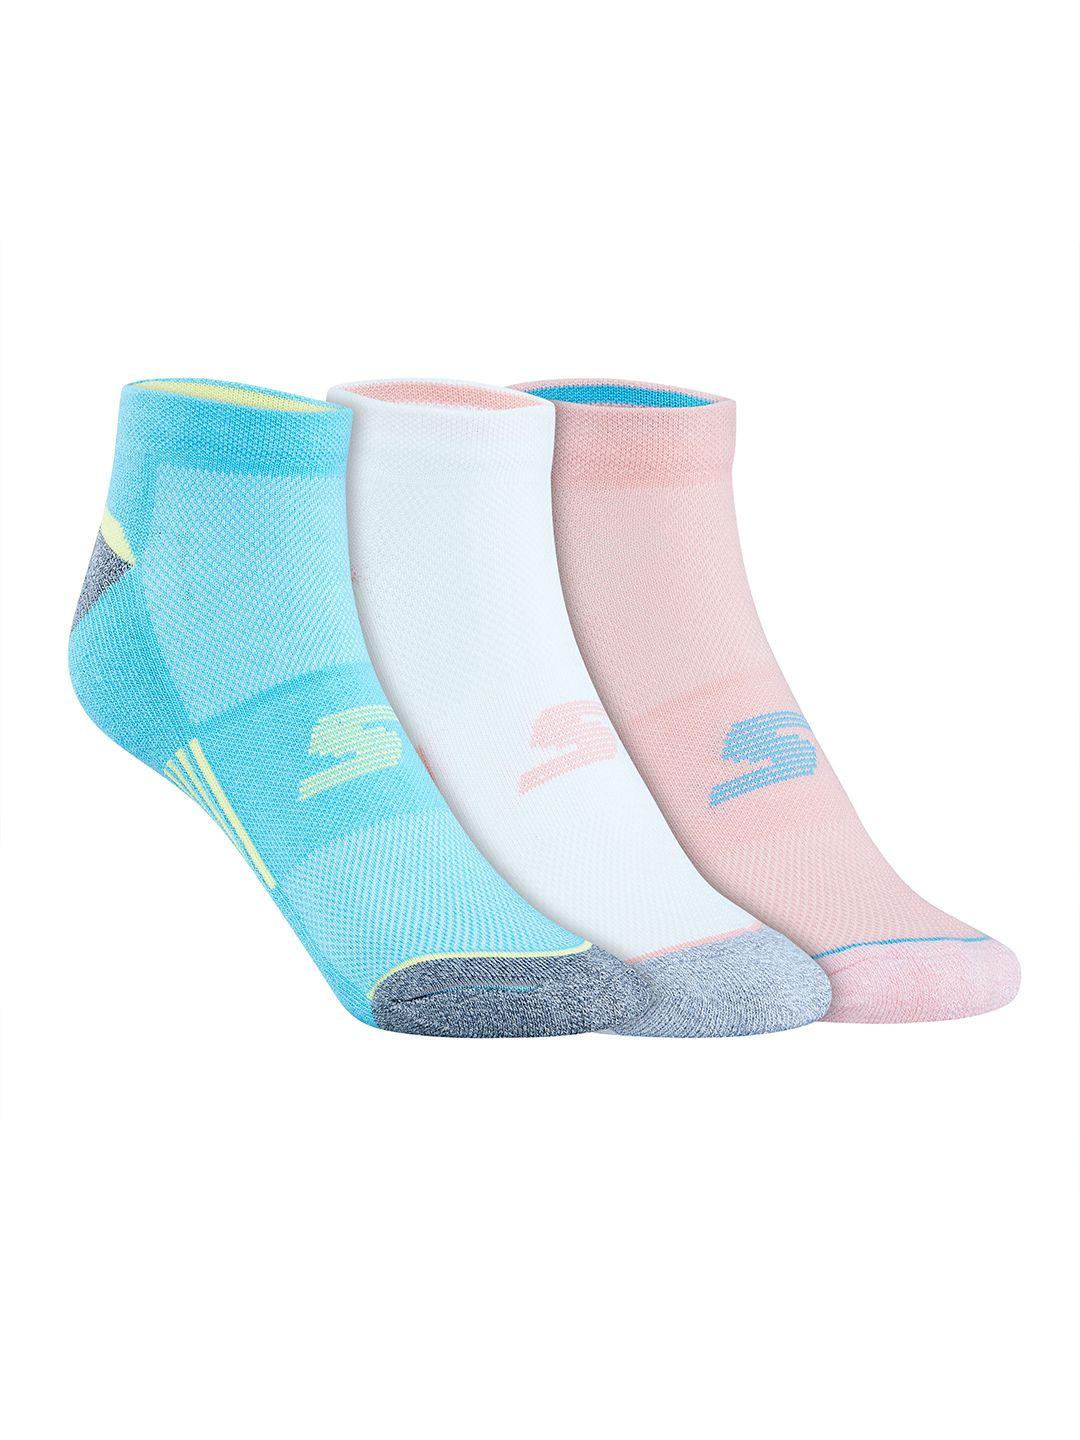 skechers-women-pack-of-3-patterned-terry-low-cut-socks